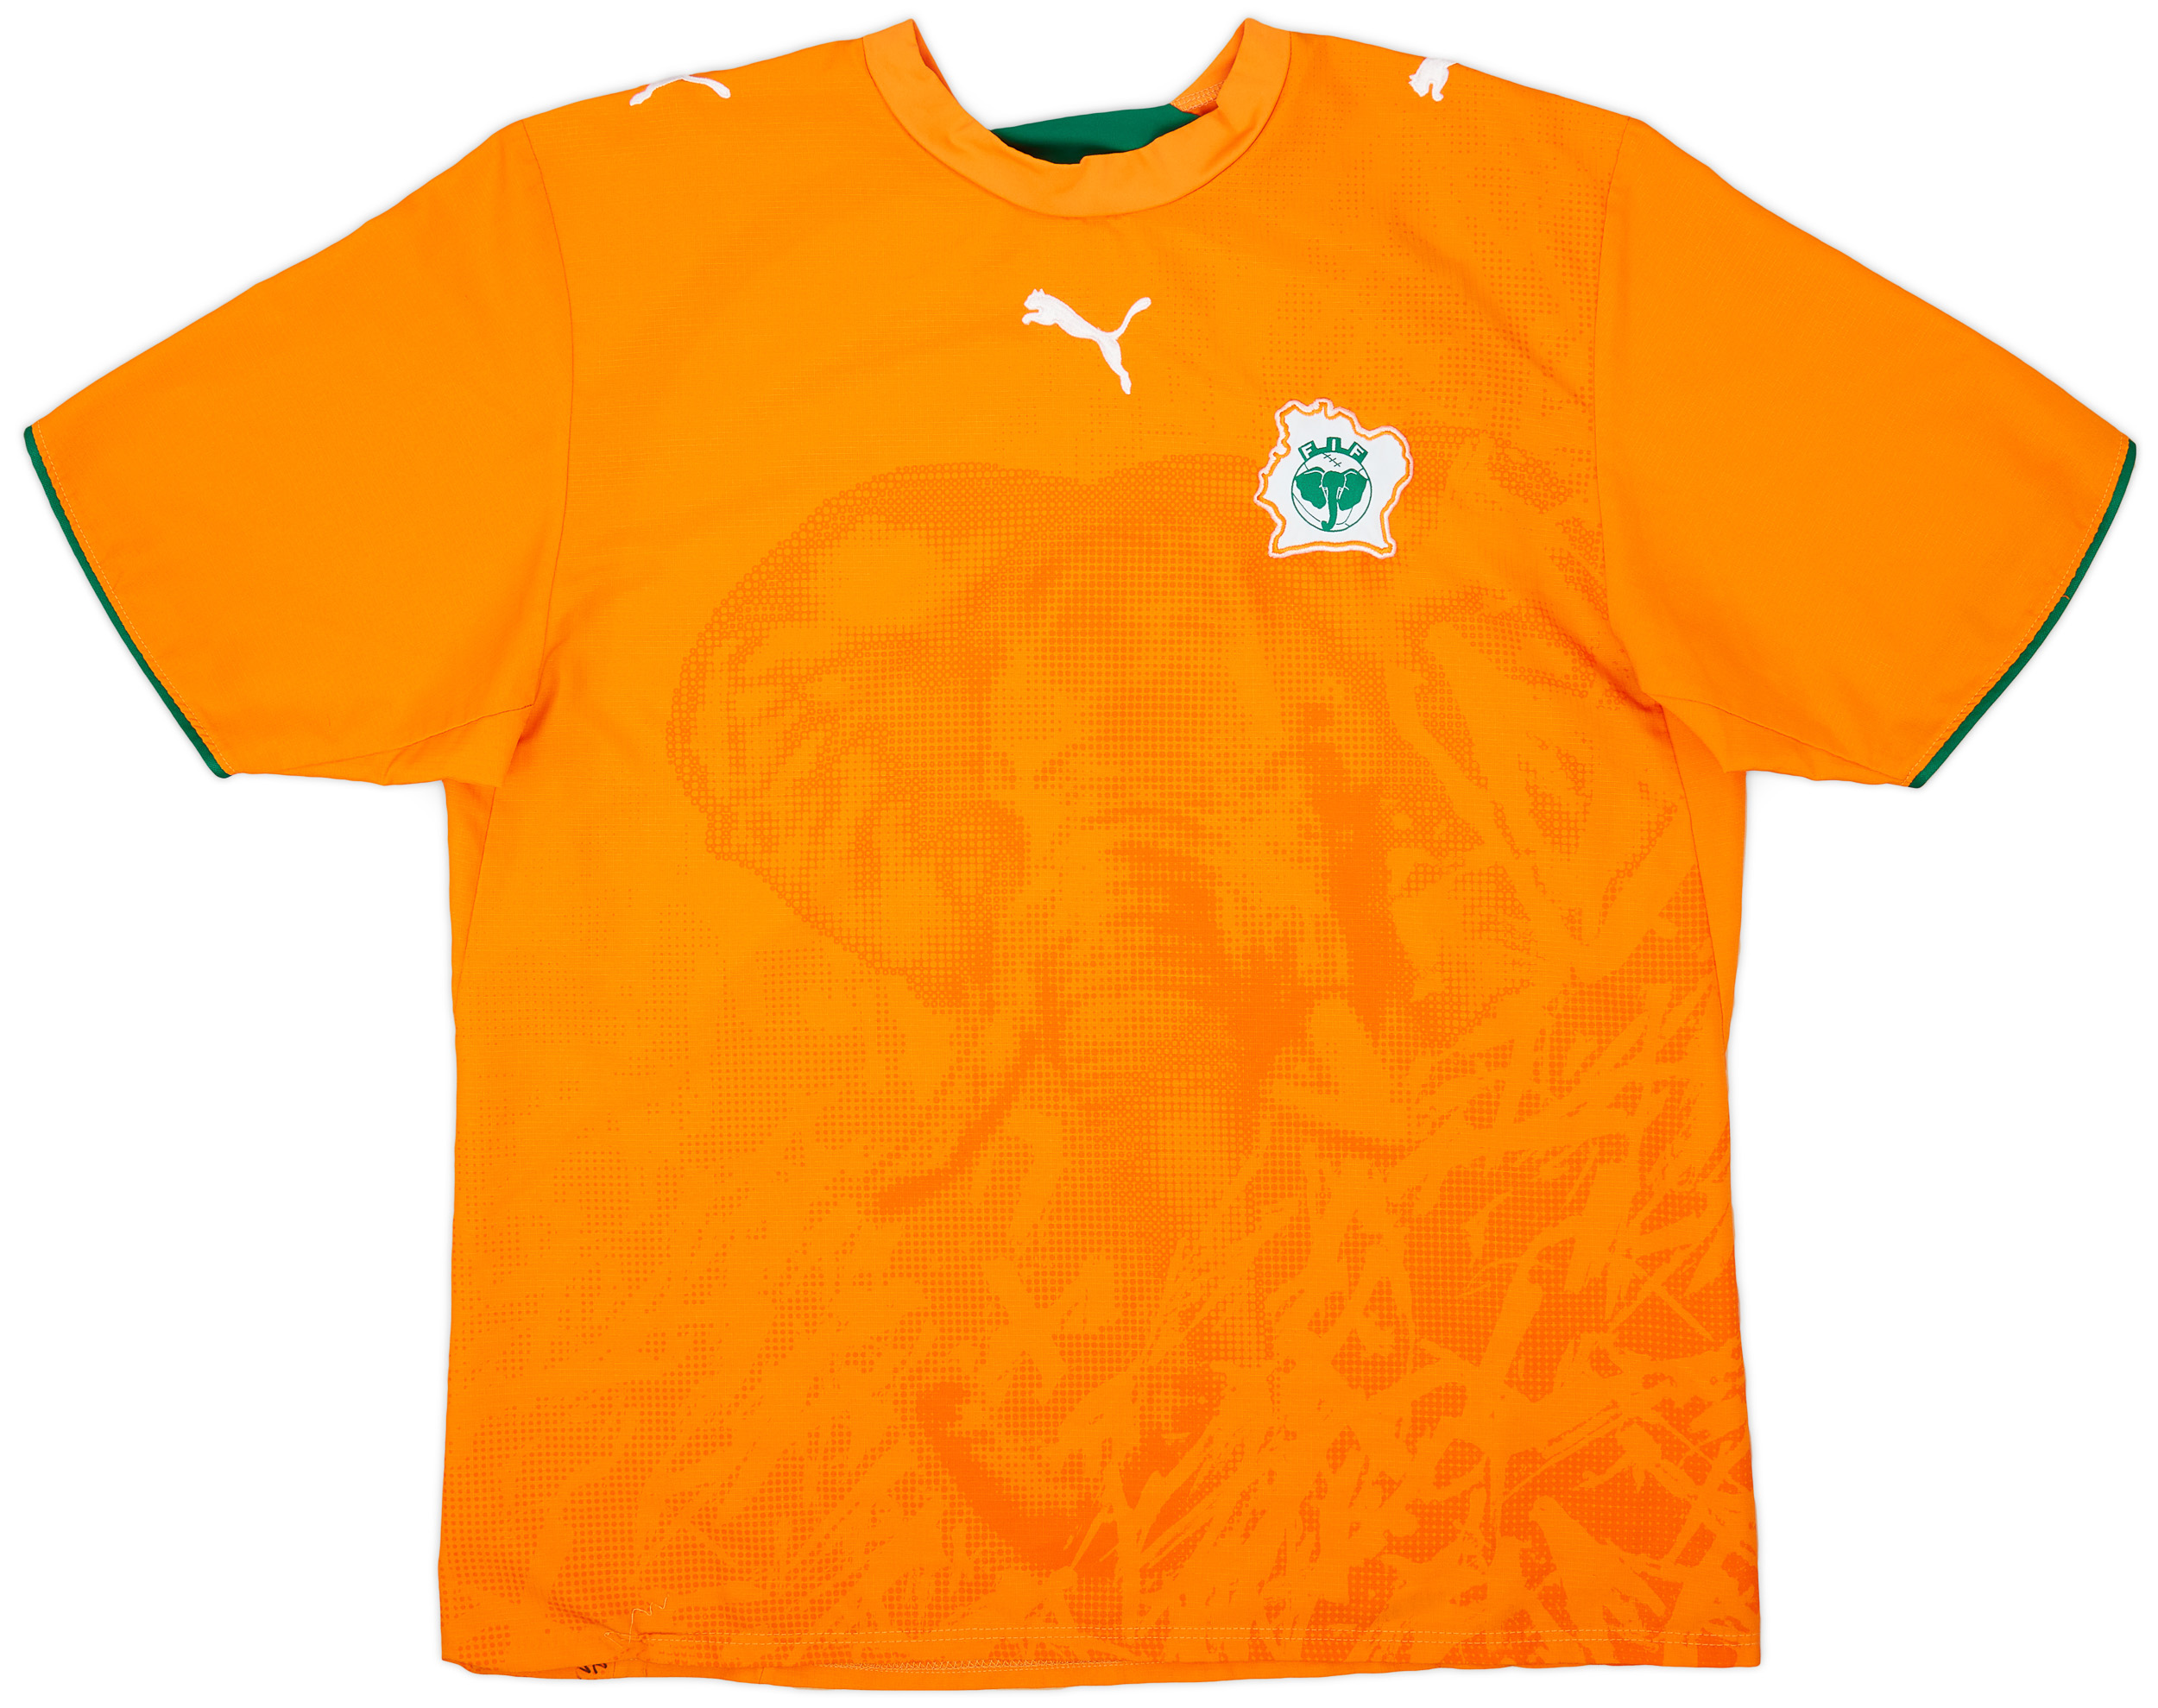 2006-07 Ivory Coast Home Shirt - 9/10 - ()